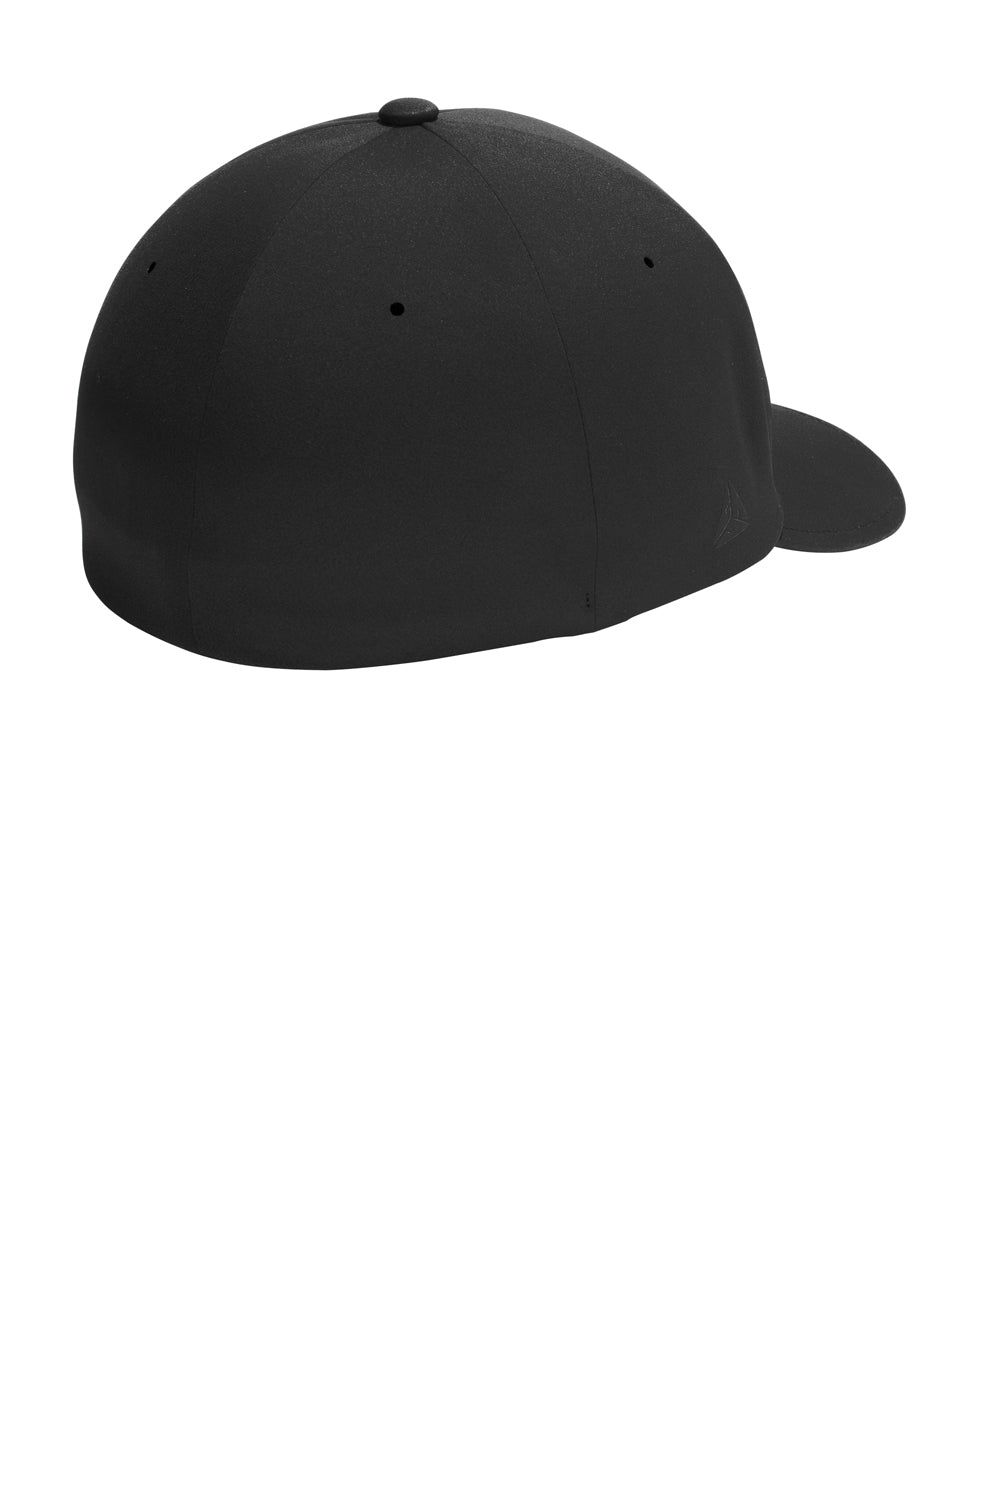 Port Authority C938 Delta Flexfit Hat Black Back